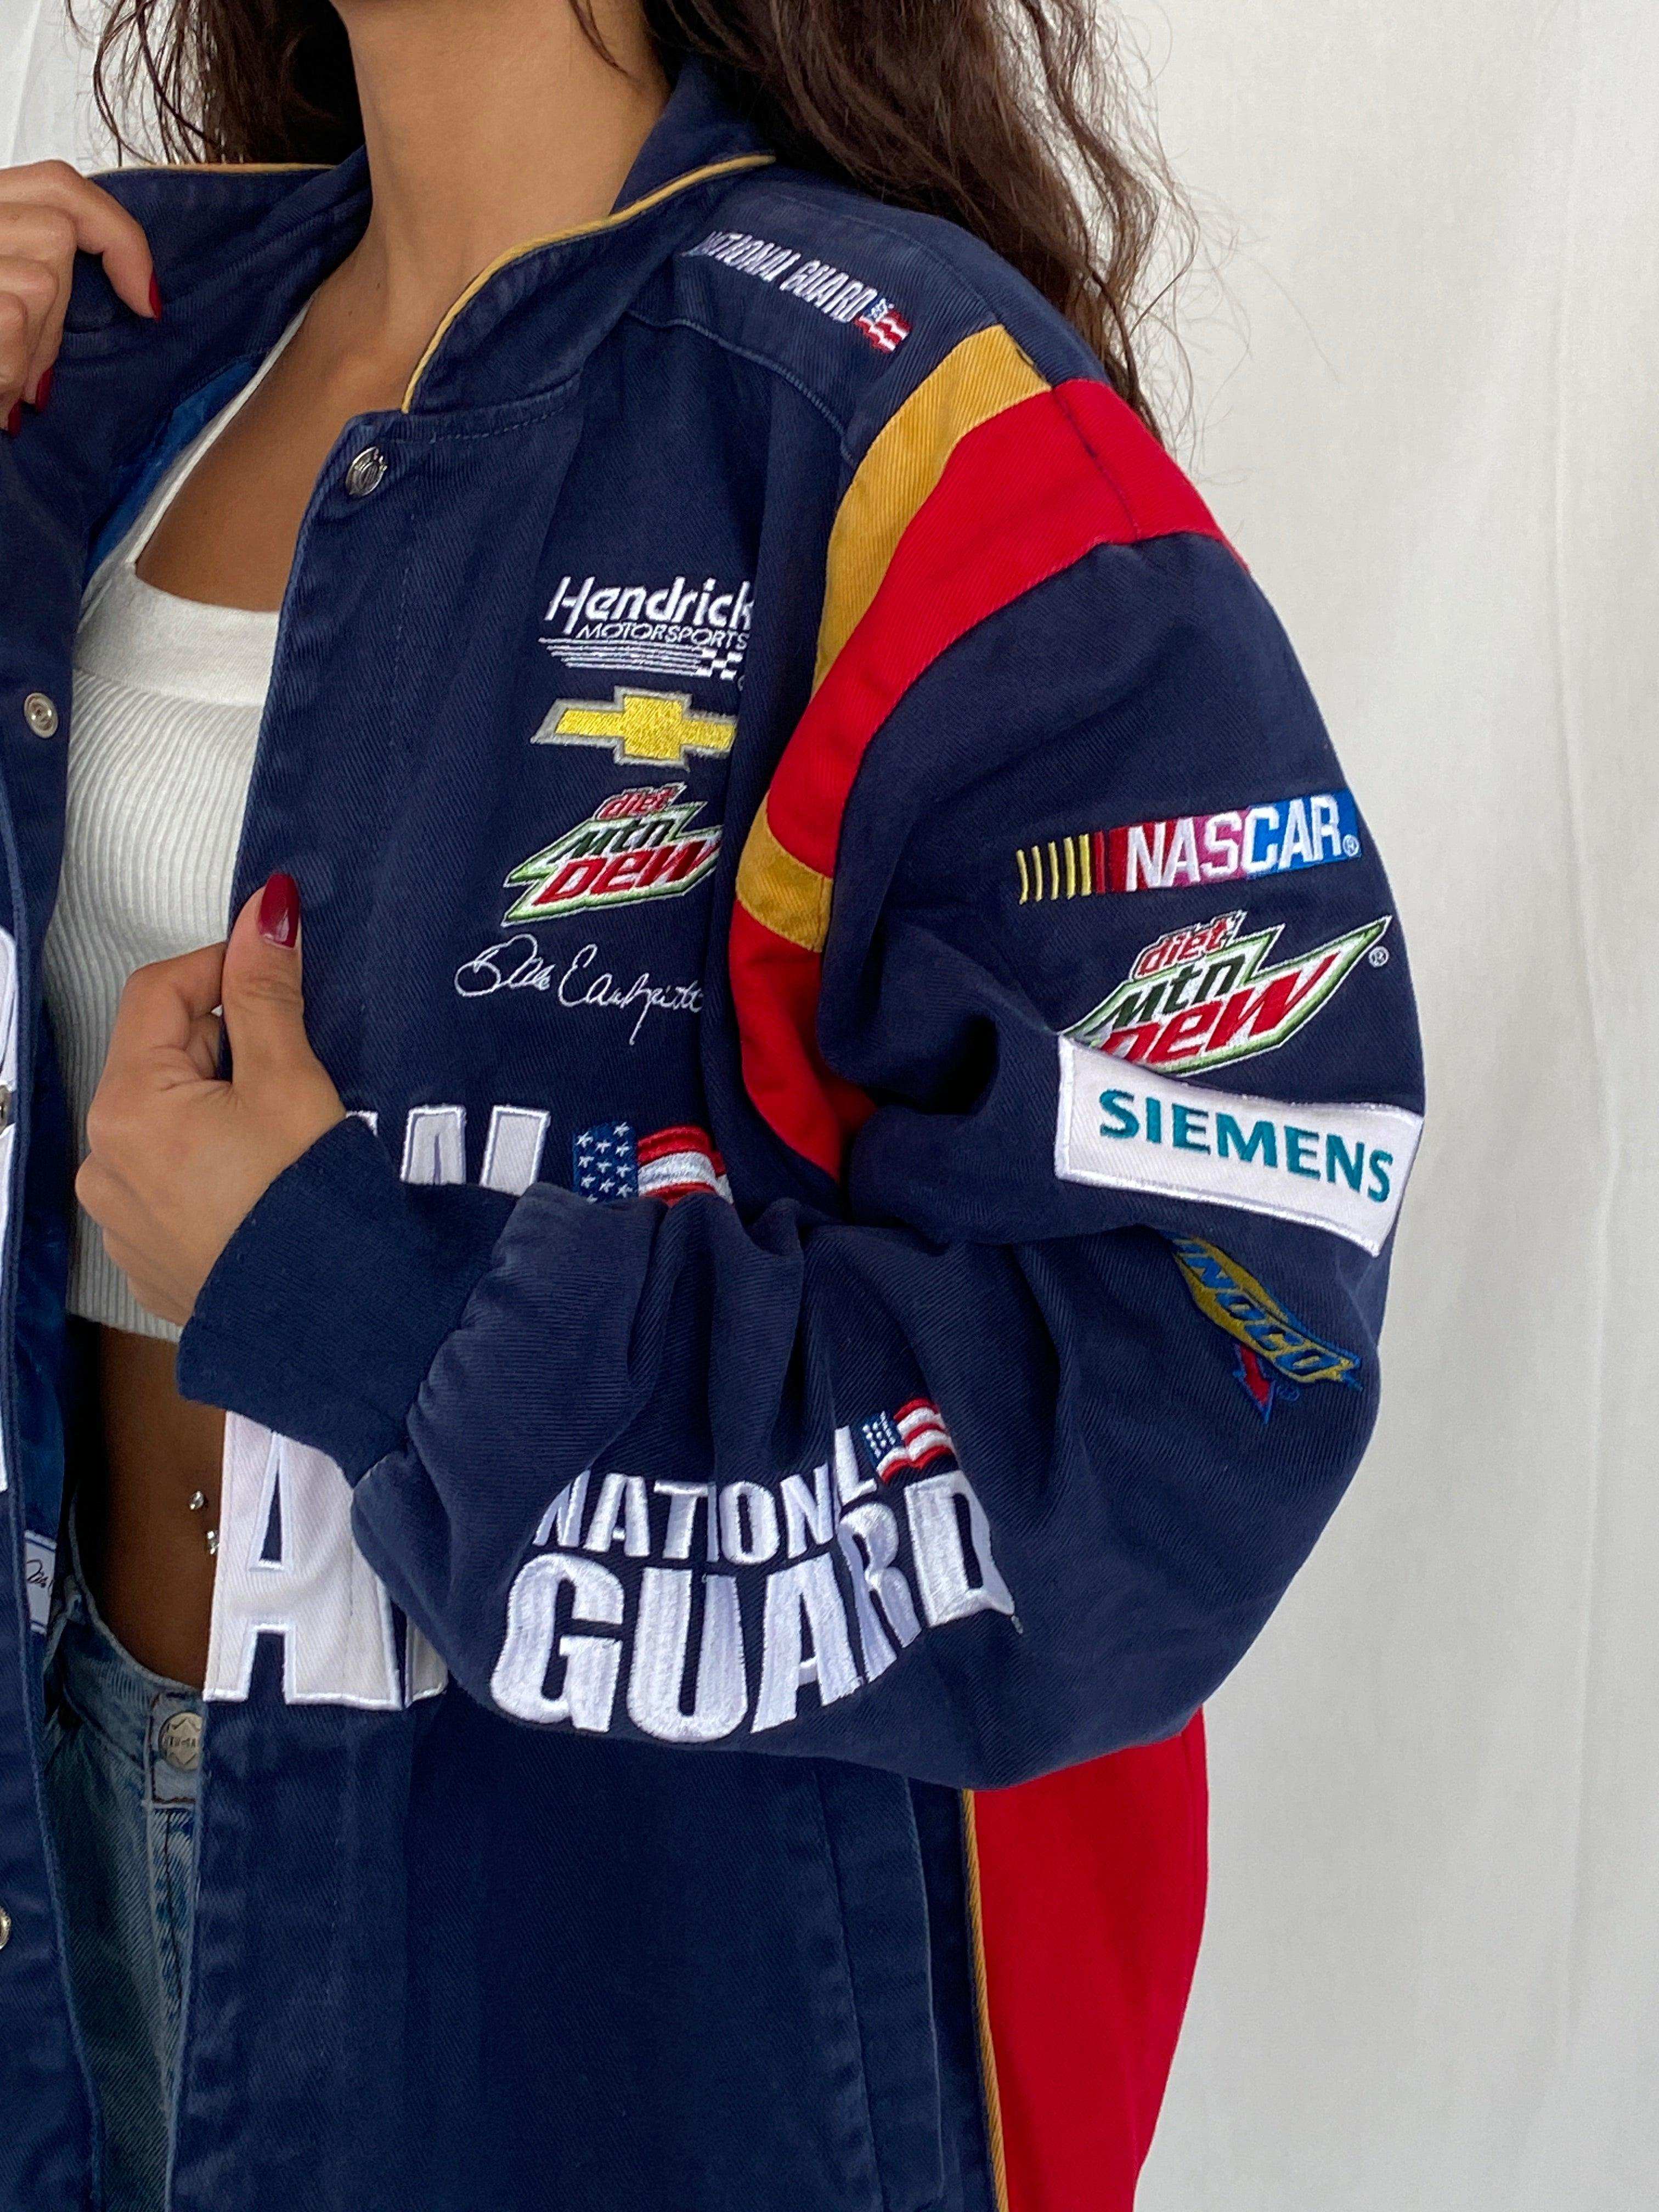 NASCAR National Guard Racing Jacket - Balagan Vintage Racing Jacket heavy jacket, jacket, NEW IN, racing jacket, Tojan